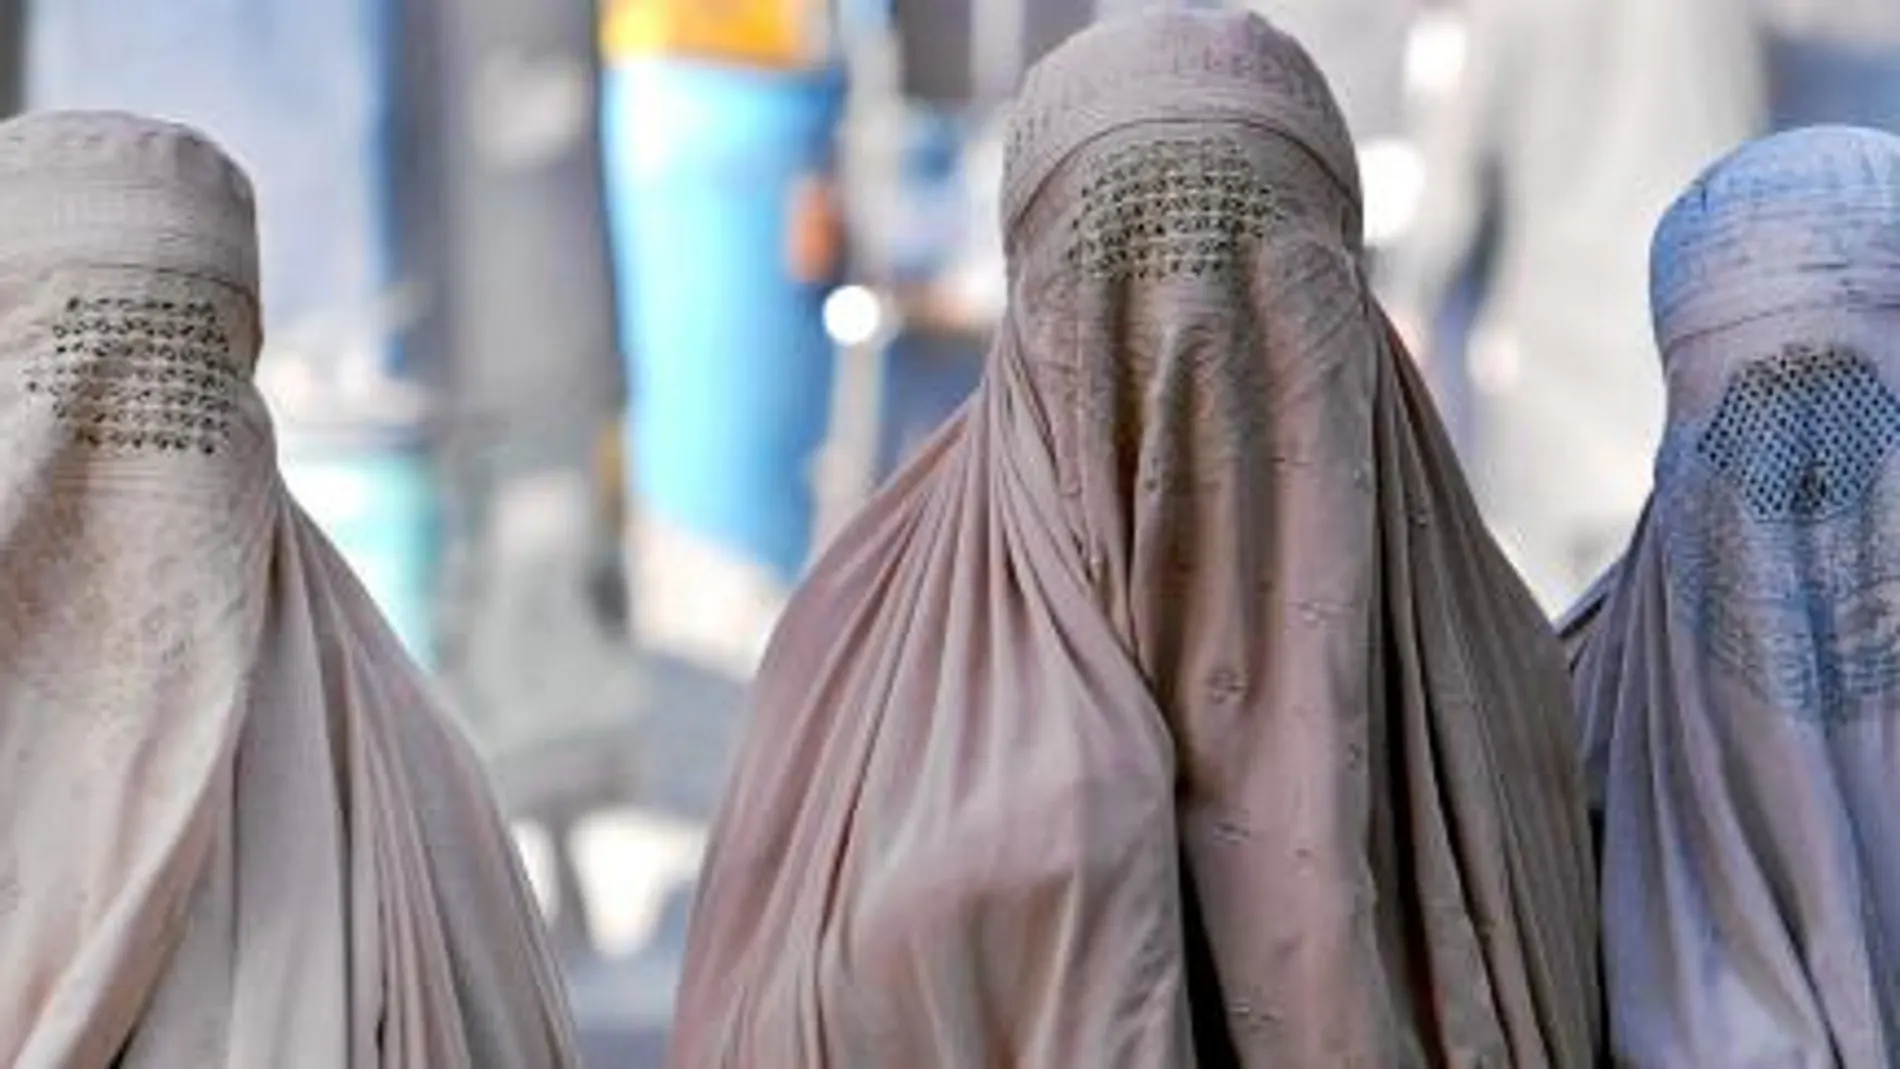 El debate sobre el niqab y la discriminación de la mujer está recorriendo todo el contiente europeo